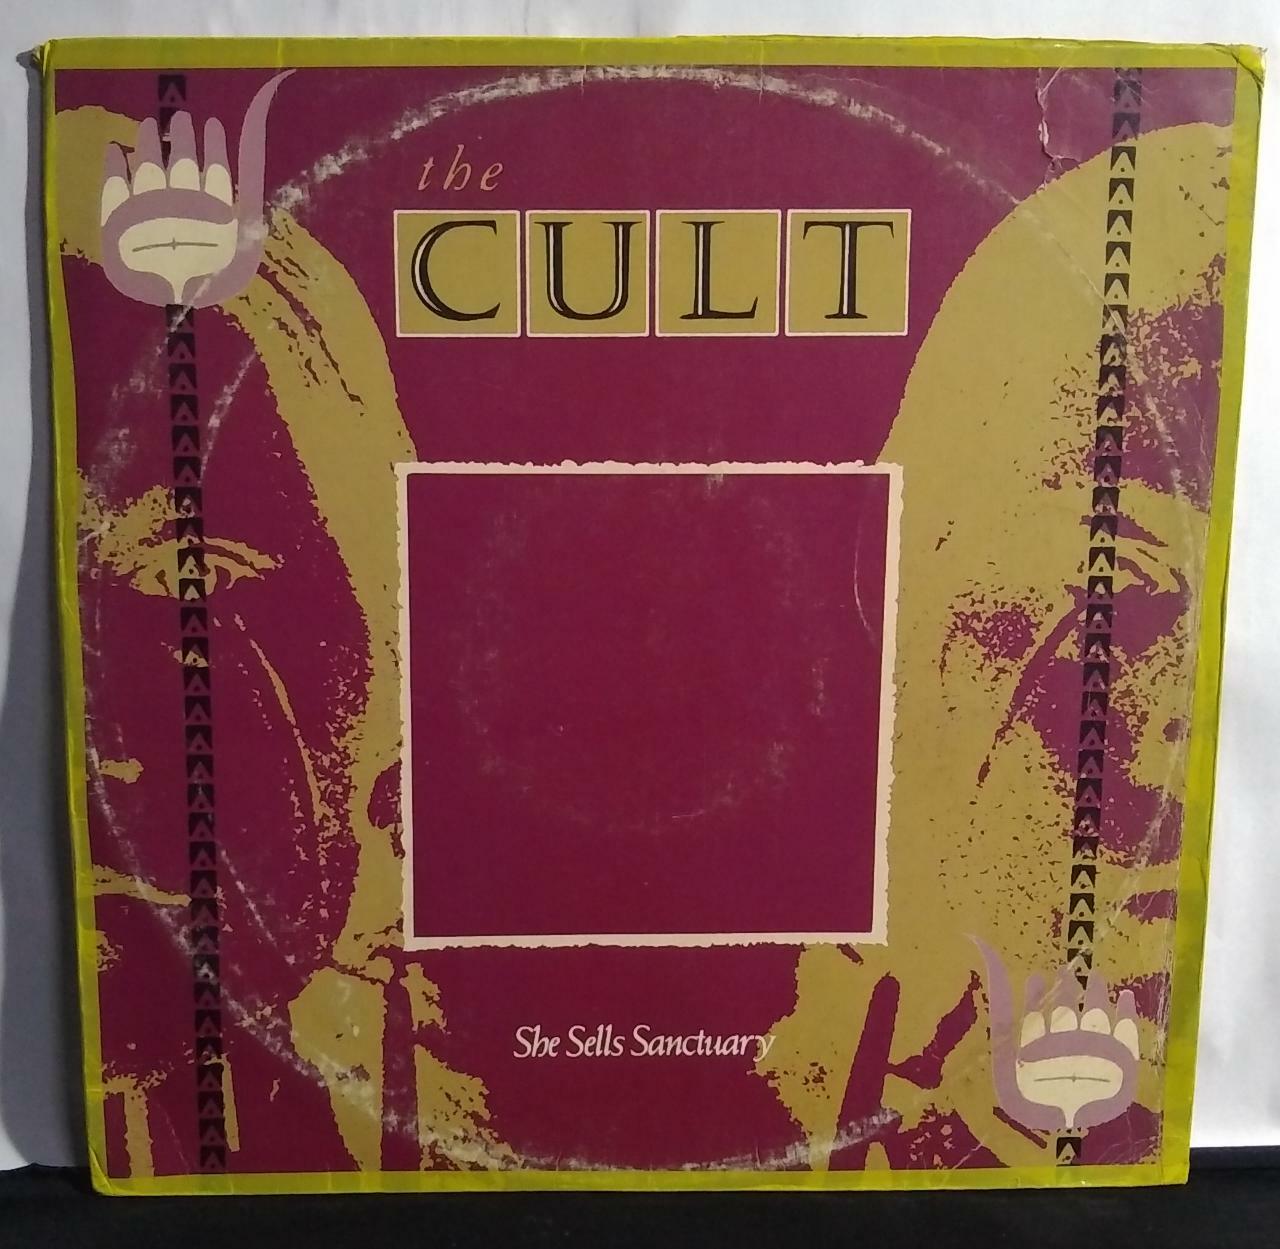 Vinil - Cult the - She Sells Sanctuary